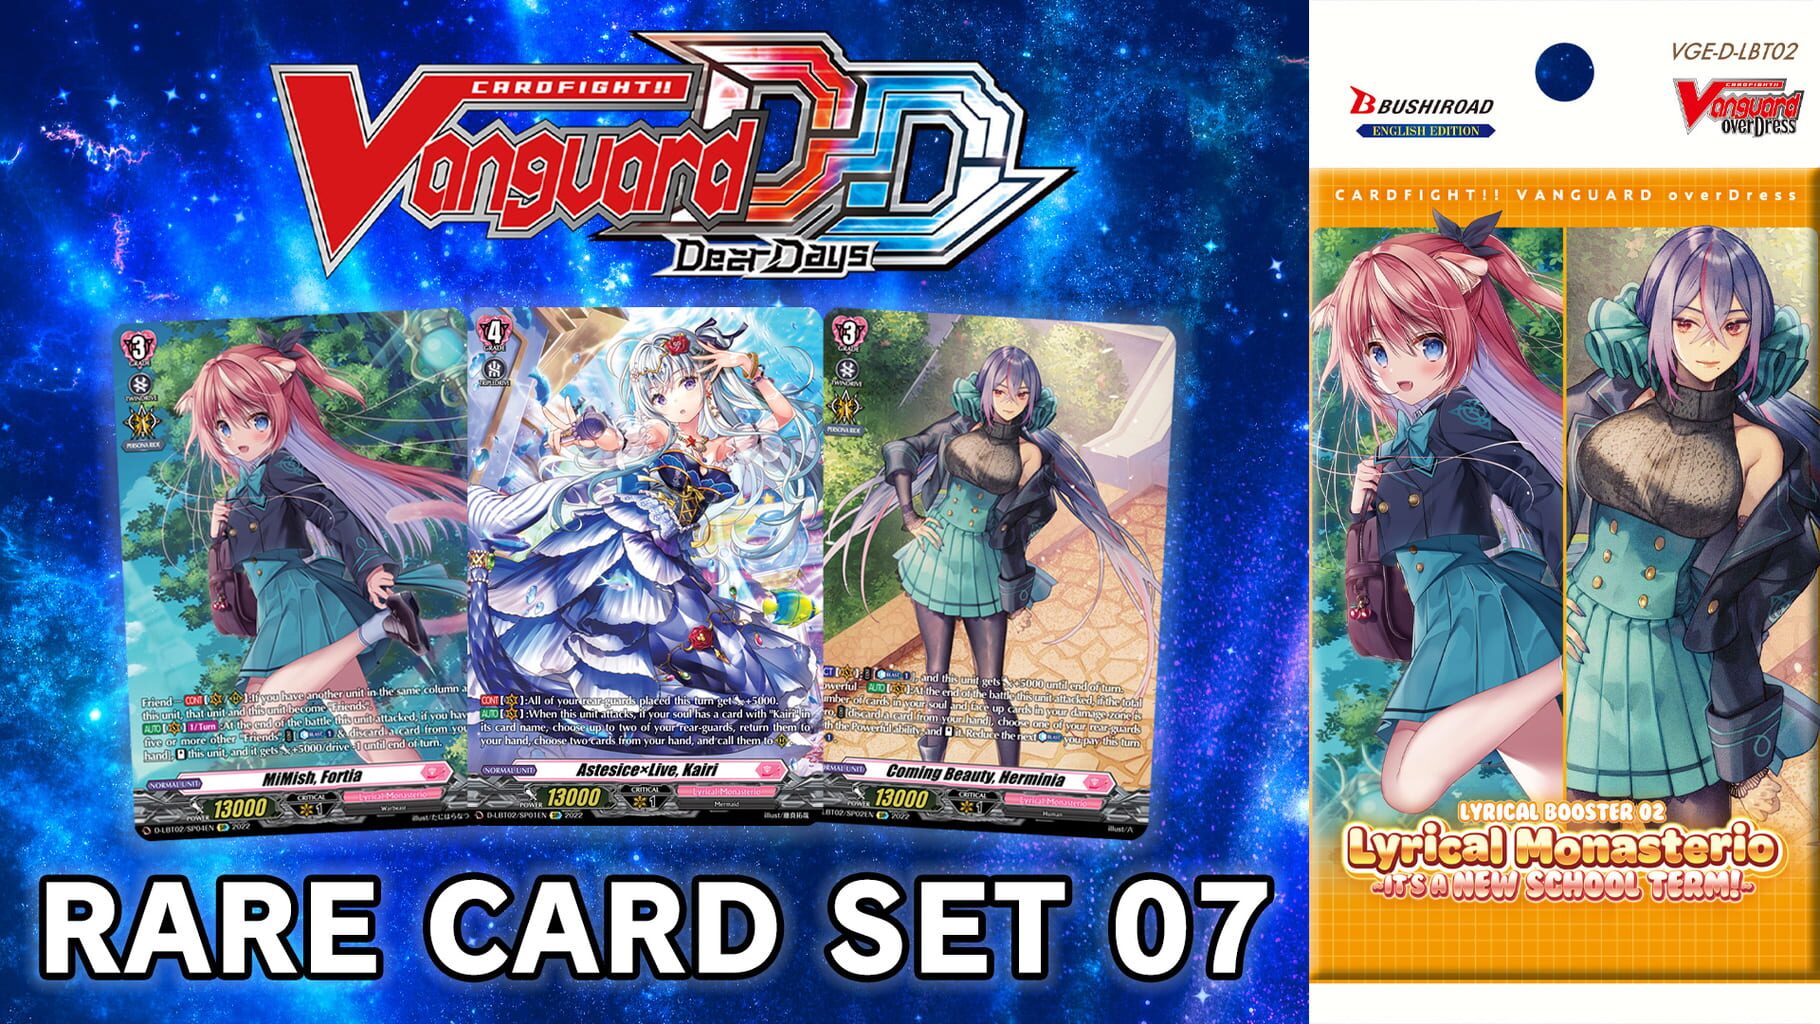 Cardfight!! Vanguard: Dear Days - Rare Card Set 07 D-LBT02: Lyrical Monasterio - It's a New School Term! artwork